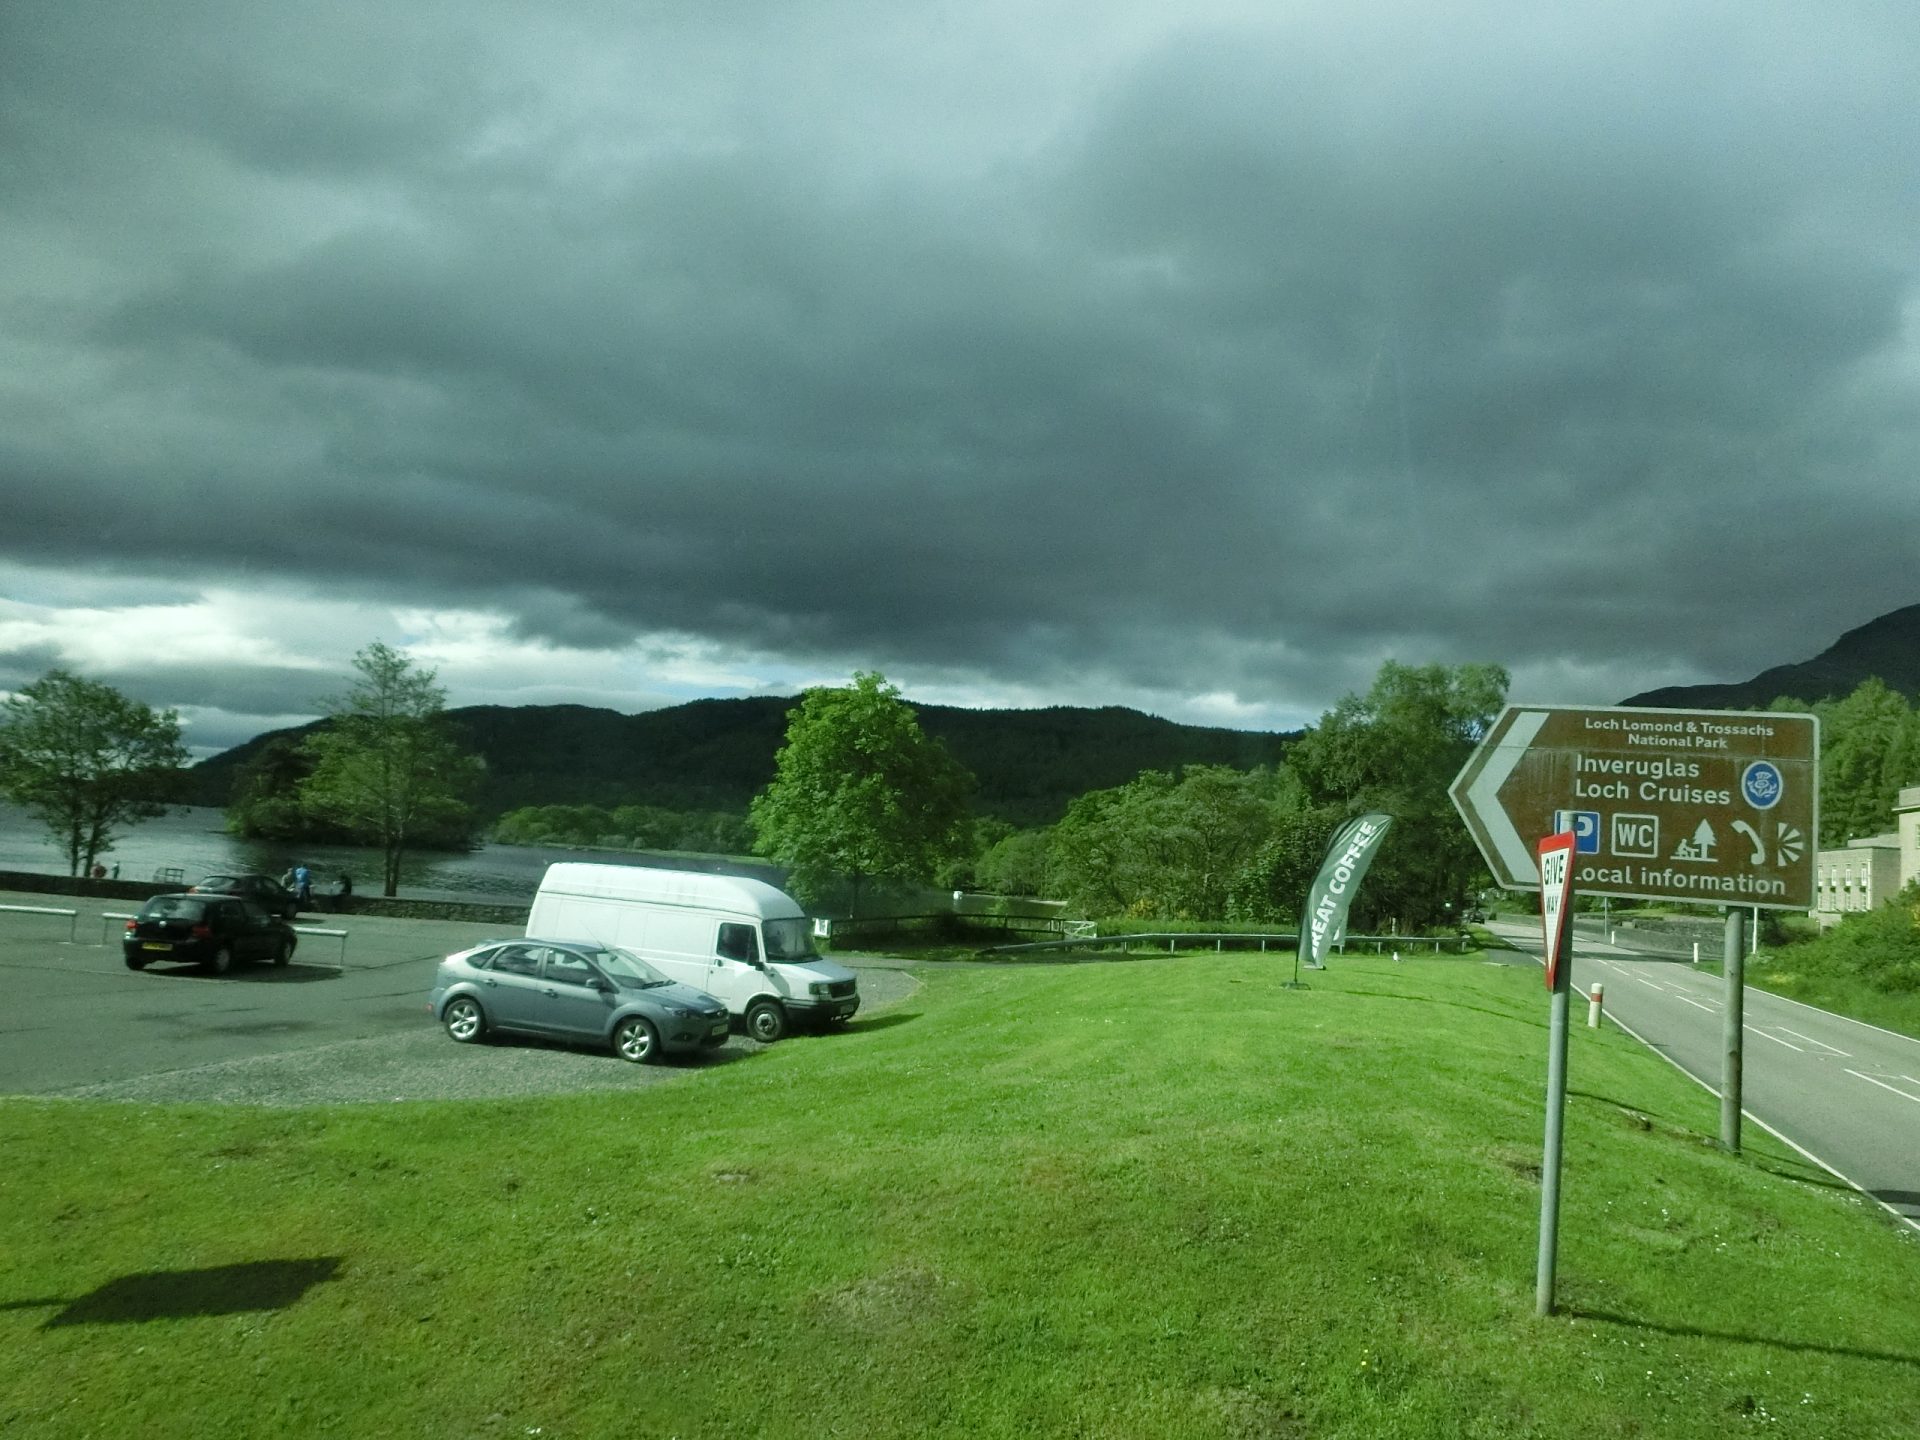 「蘇格蘭」->羅蒙湖(Loch Lomond)->蘇格蘭高地(Scottish Highlands)->尼斯湖(Loch Ness)～20150622